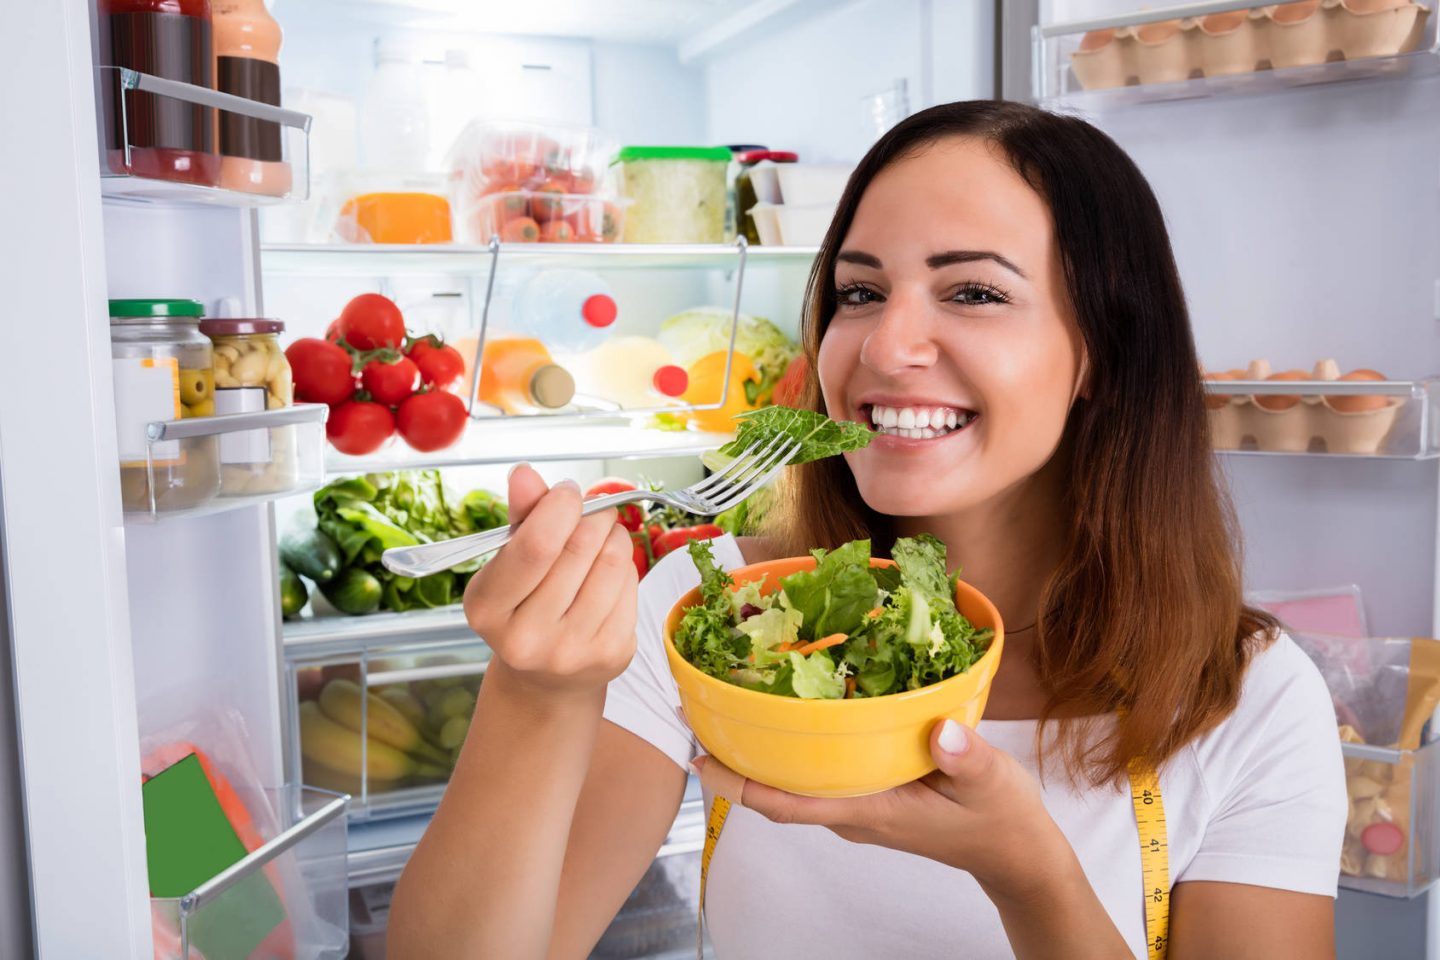 Prawidłowe przechowywanie żywności w lodówce - jak układać jedzenie w lodówce?